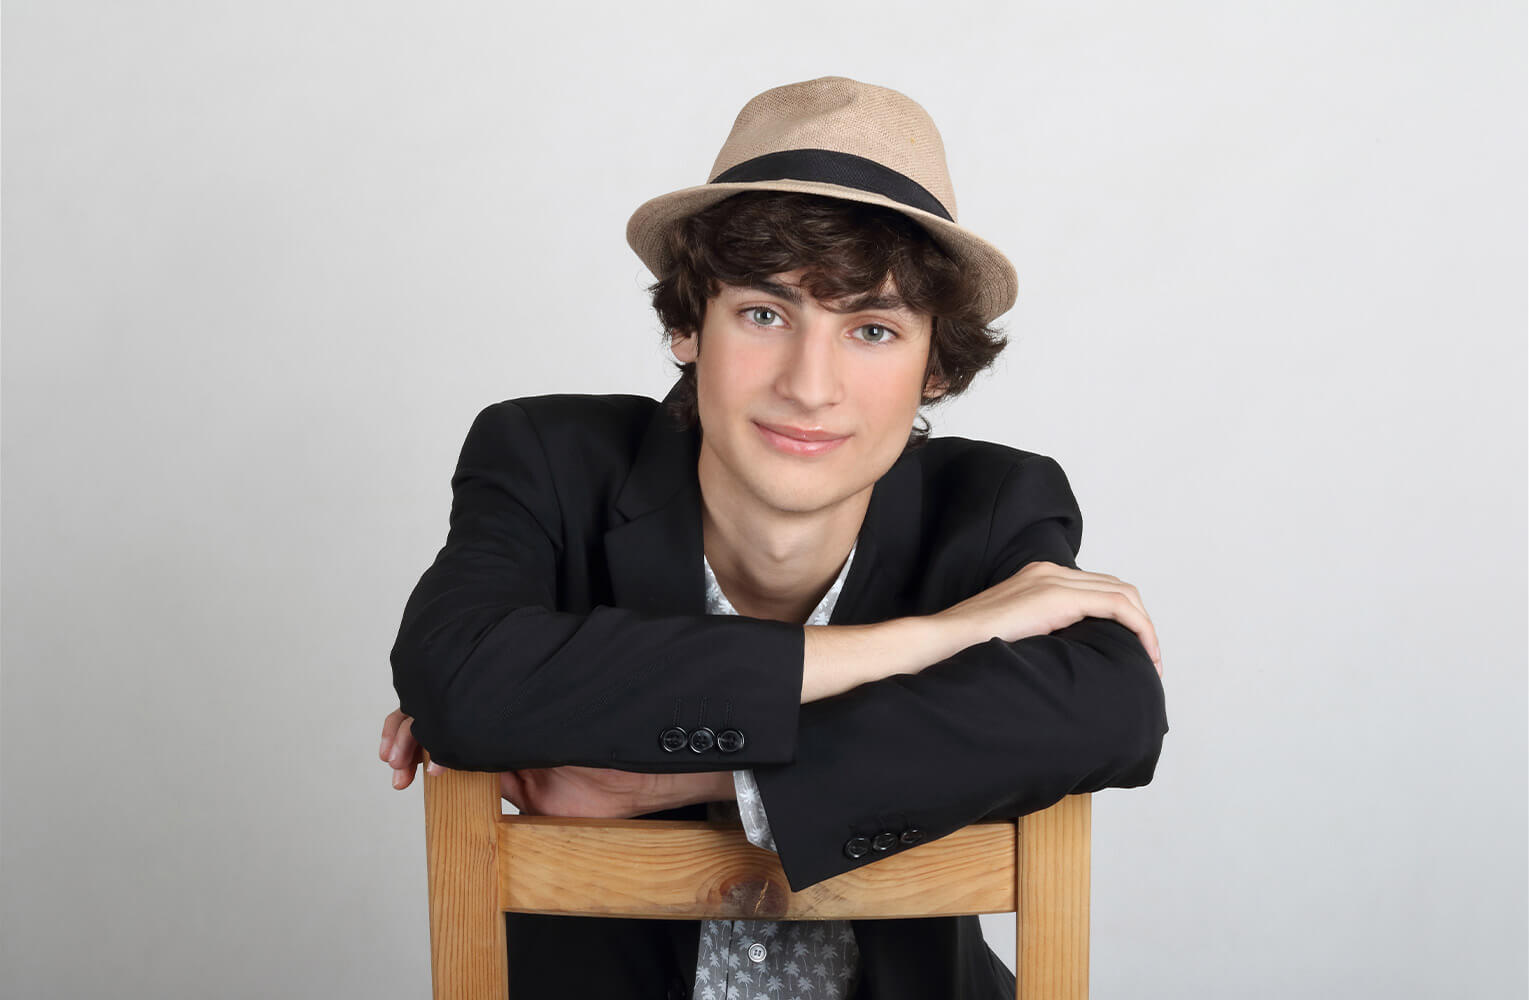 sedící umělecký portrét mladého herce s kloboukem na hlavě na světlém pozadí